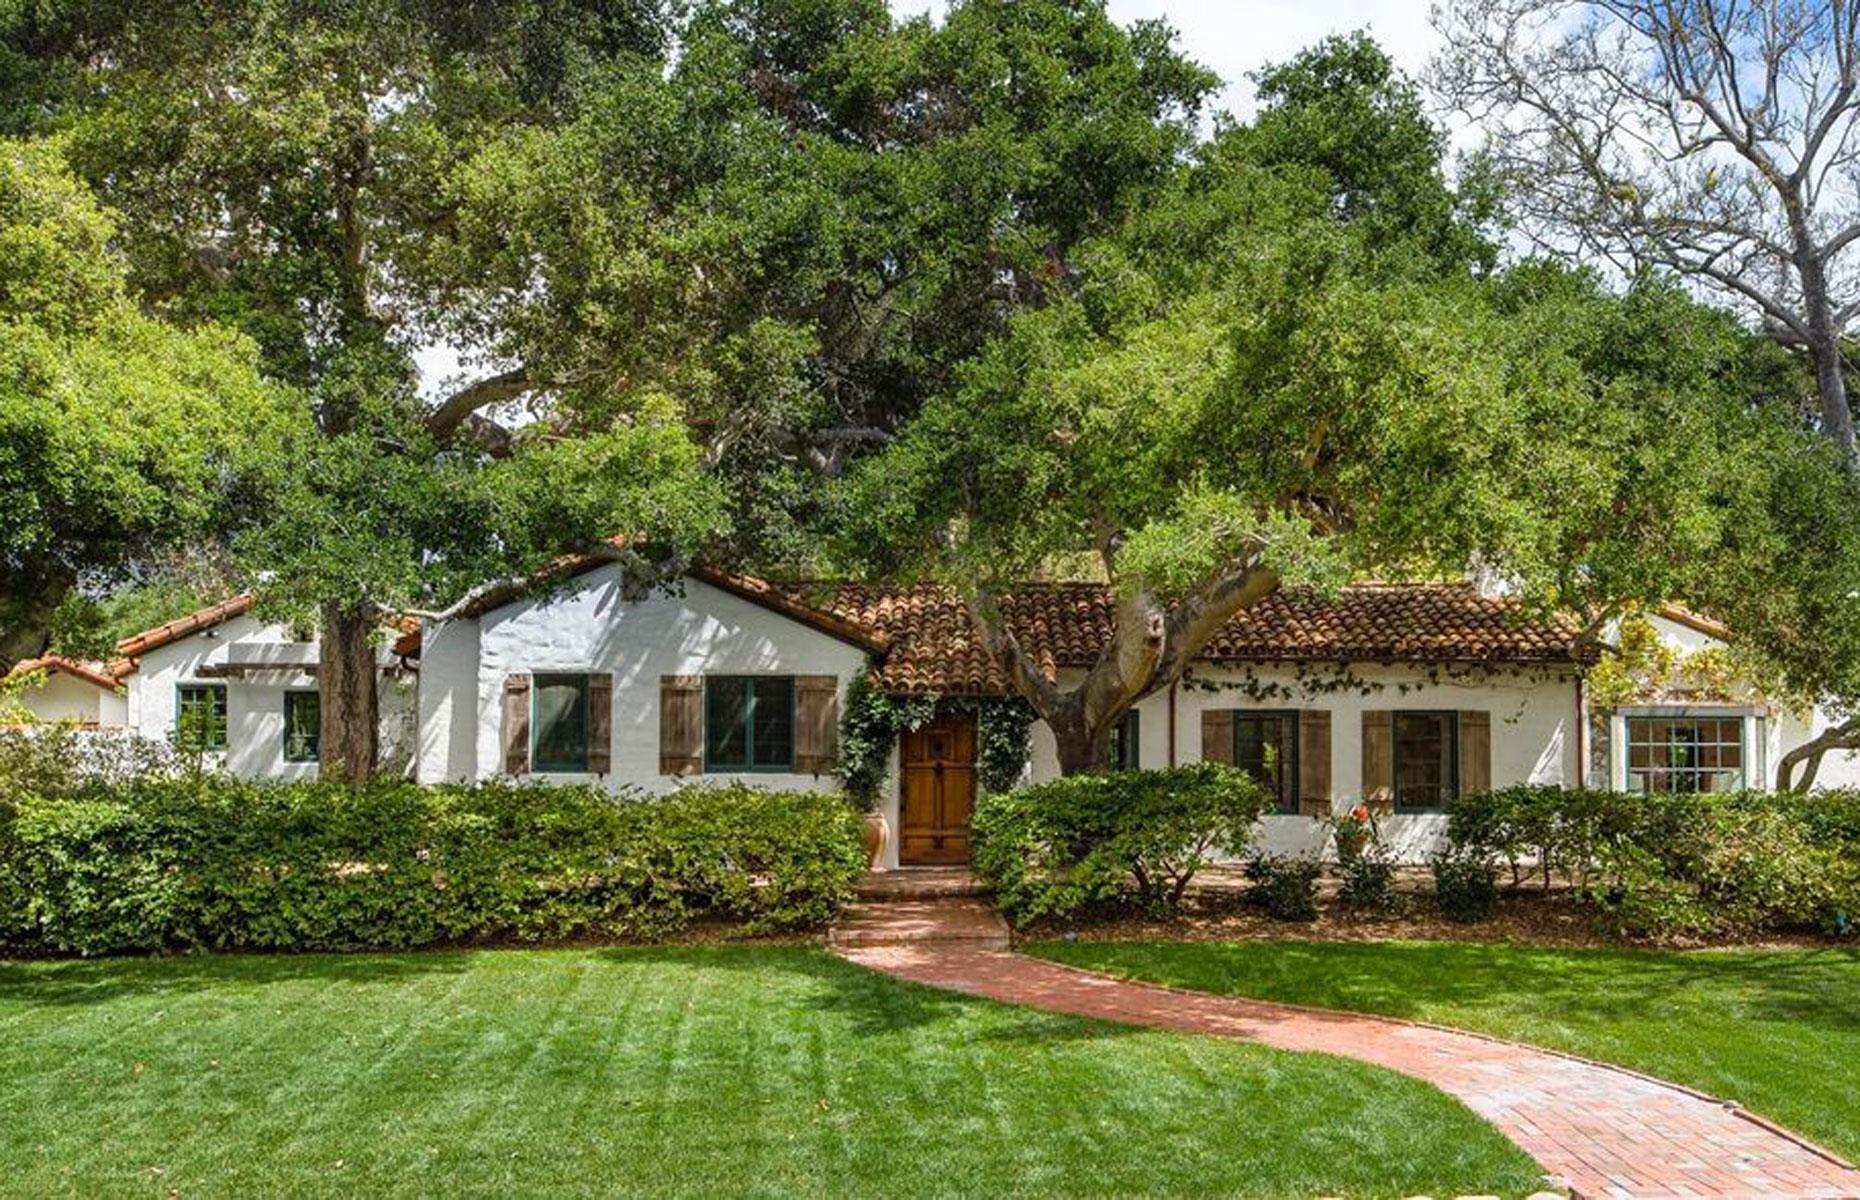 Oprah's Spanish Revival estate, Montecito, California